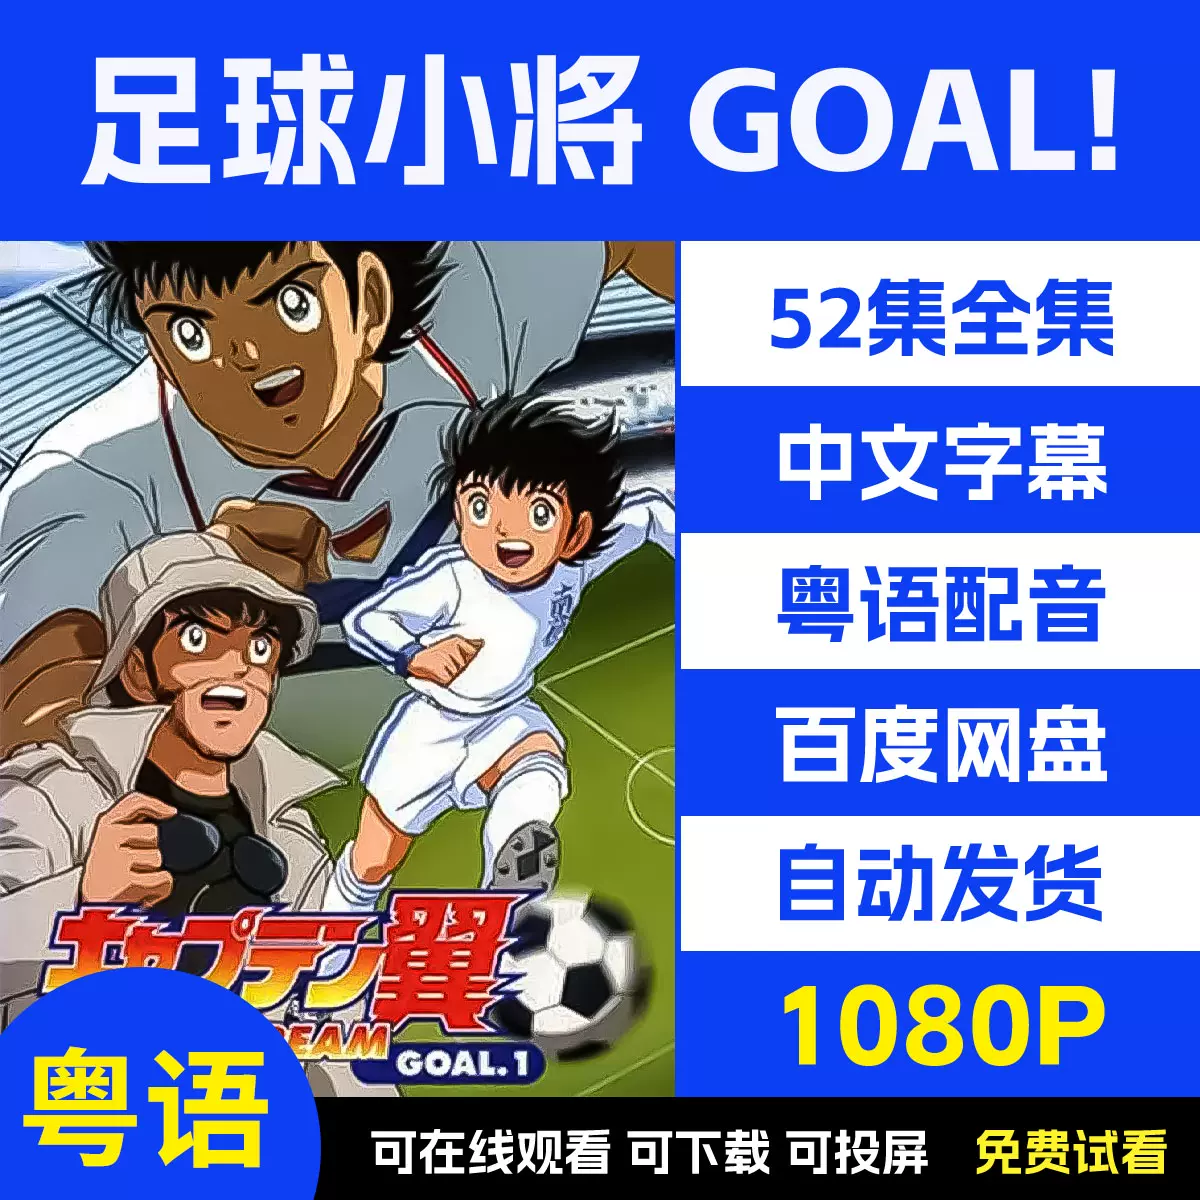 [Skymoon-Raws] 隊長小翼(足球小將) Goal / Captain Tsubasa Goal – 04 [XG Cartoon][WEB-DL][CHT][720p][AVC AAC][MP4]